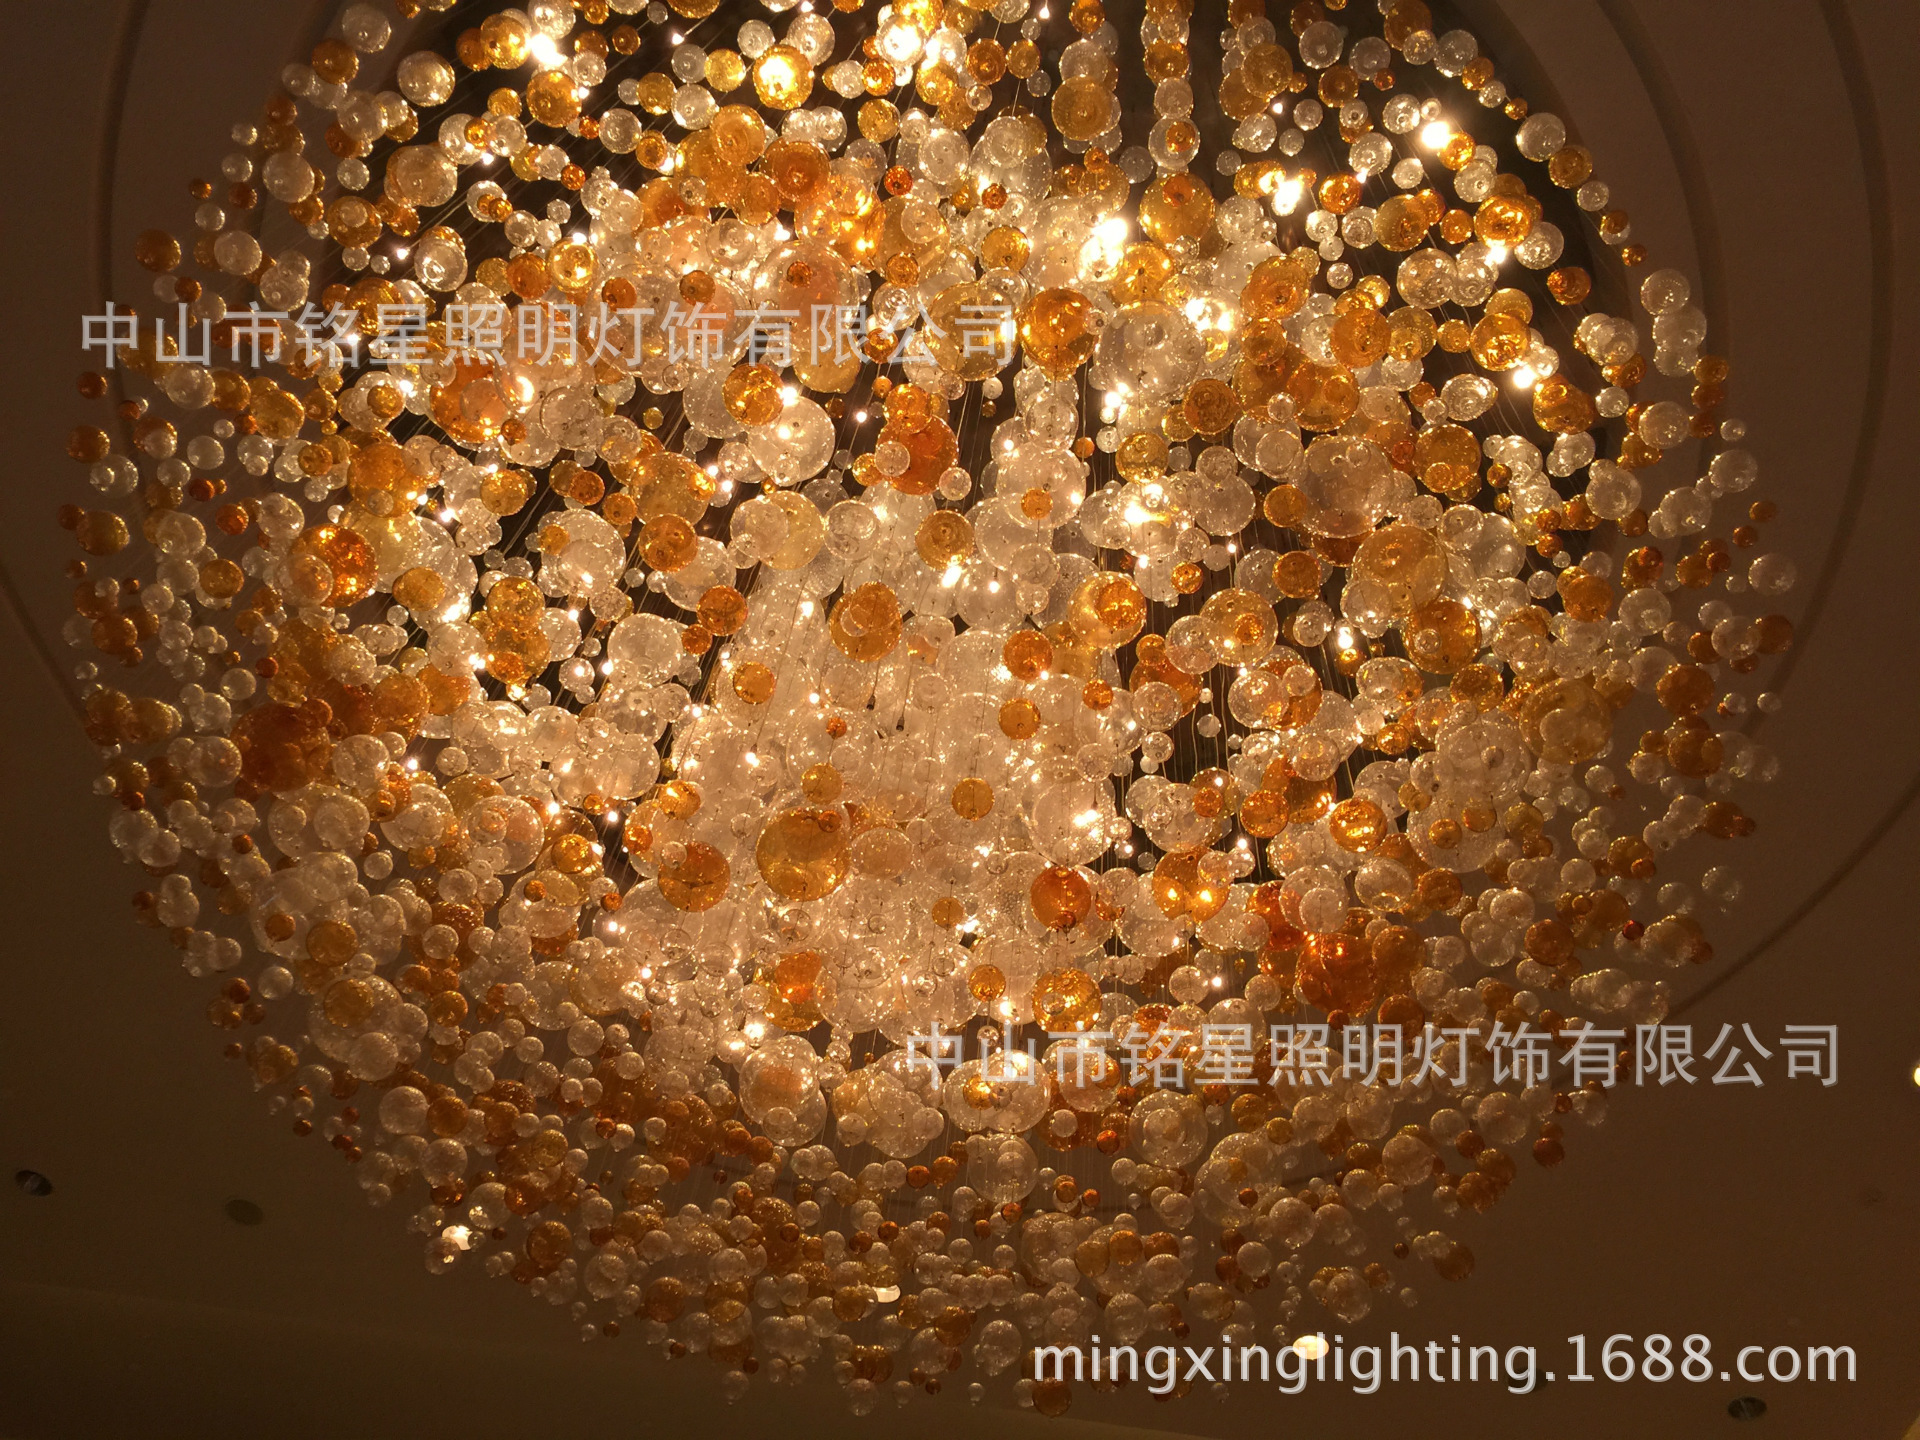 专业酒店大堂大型光立方吊灯厂家定制售楼部展厅LED光立方体灯具示例图60